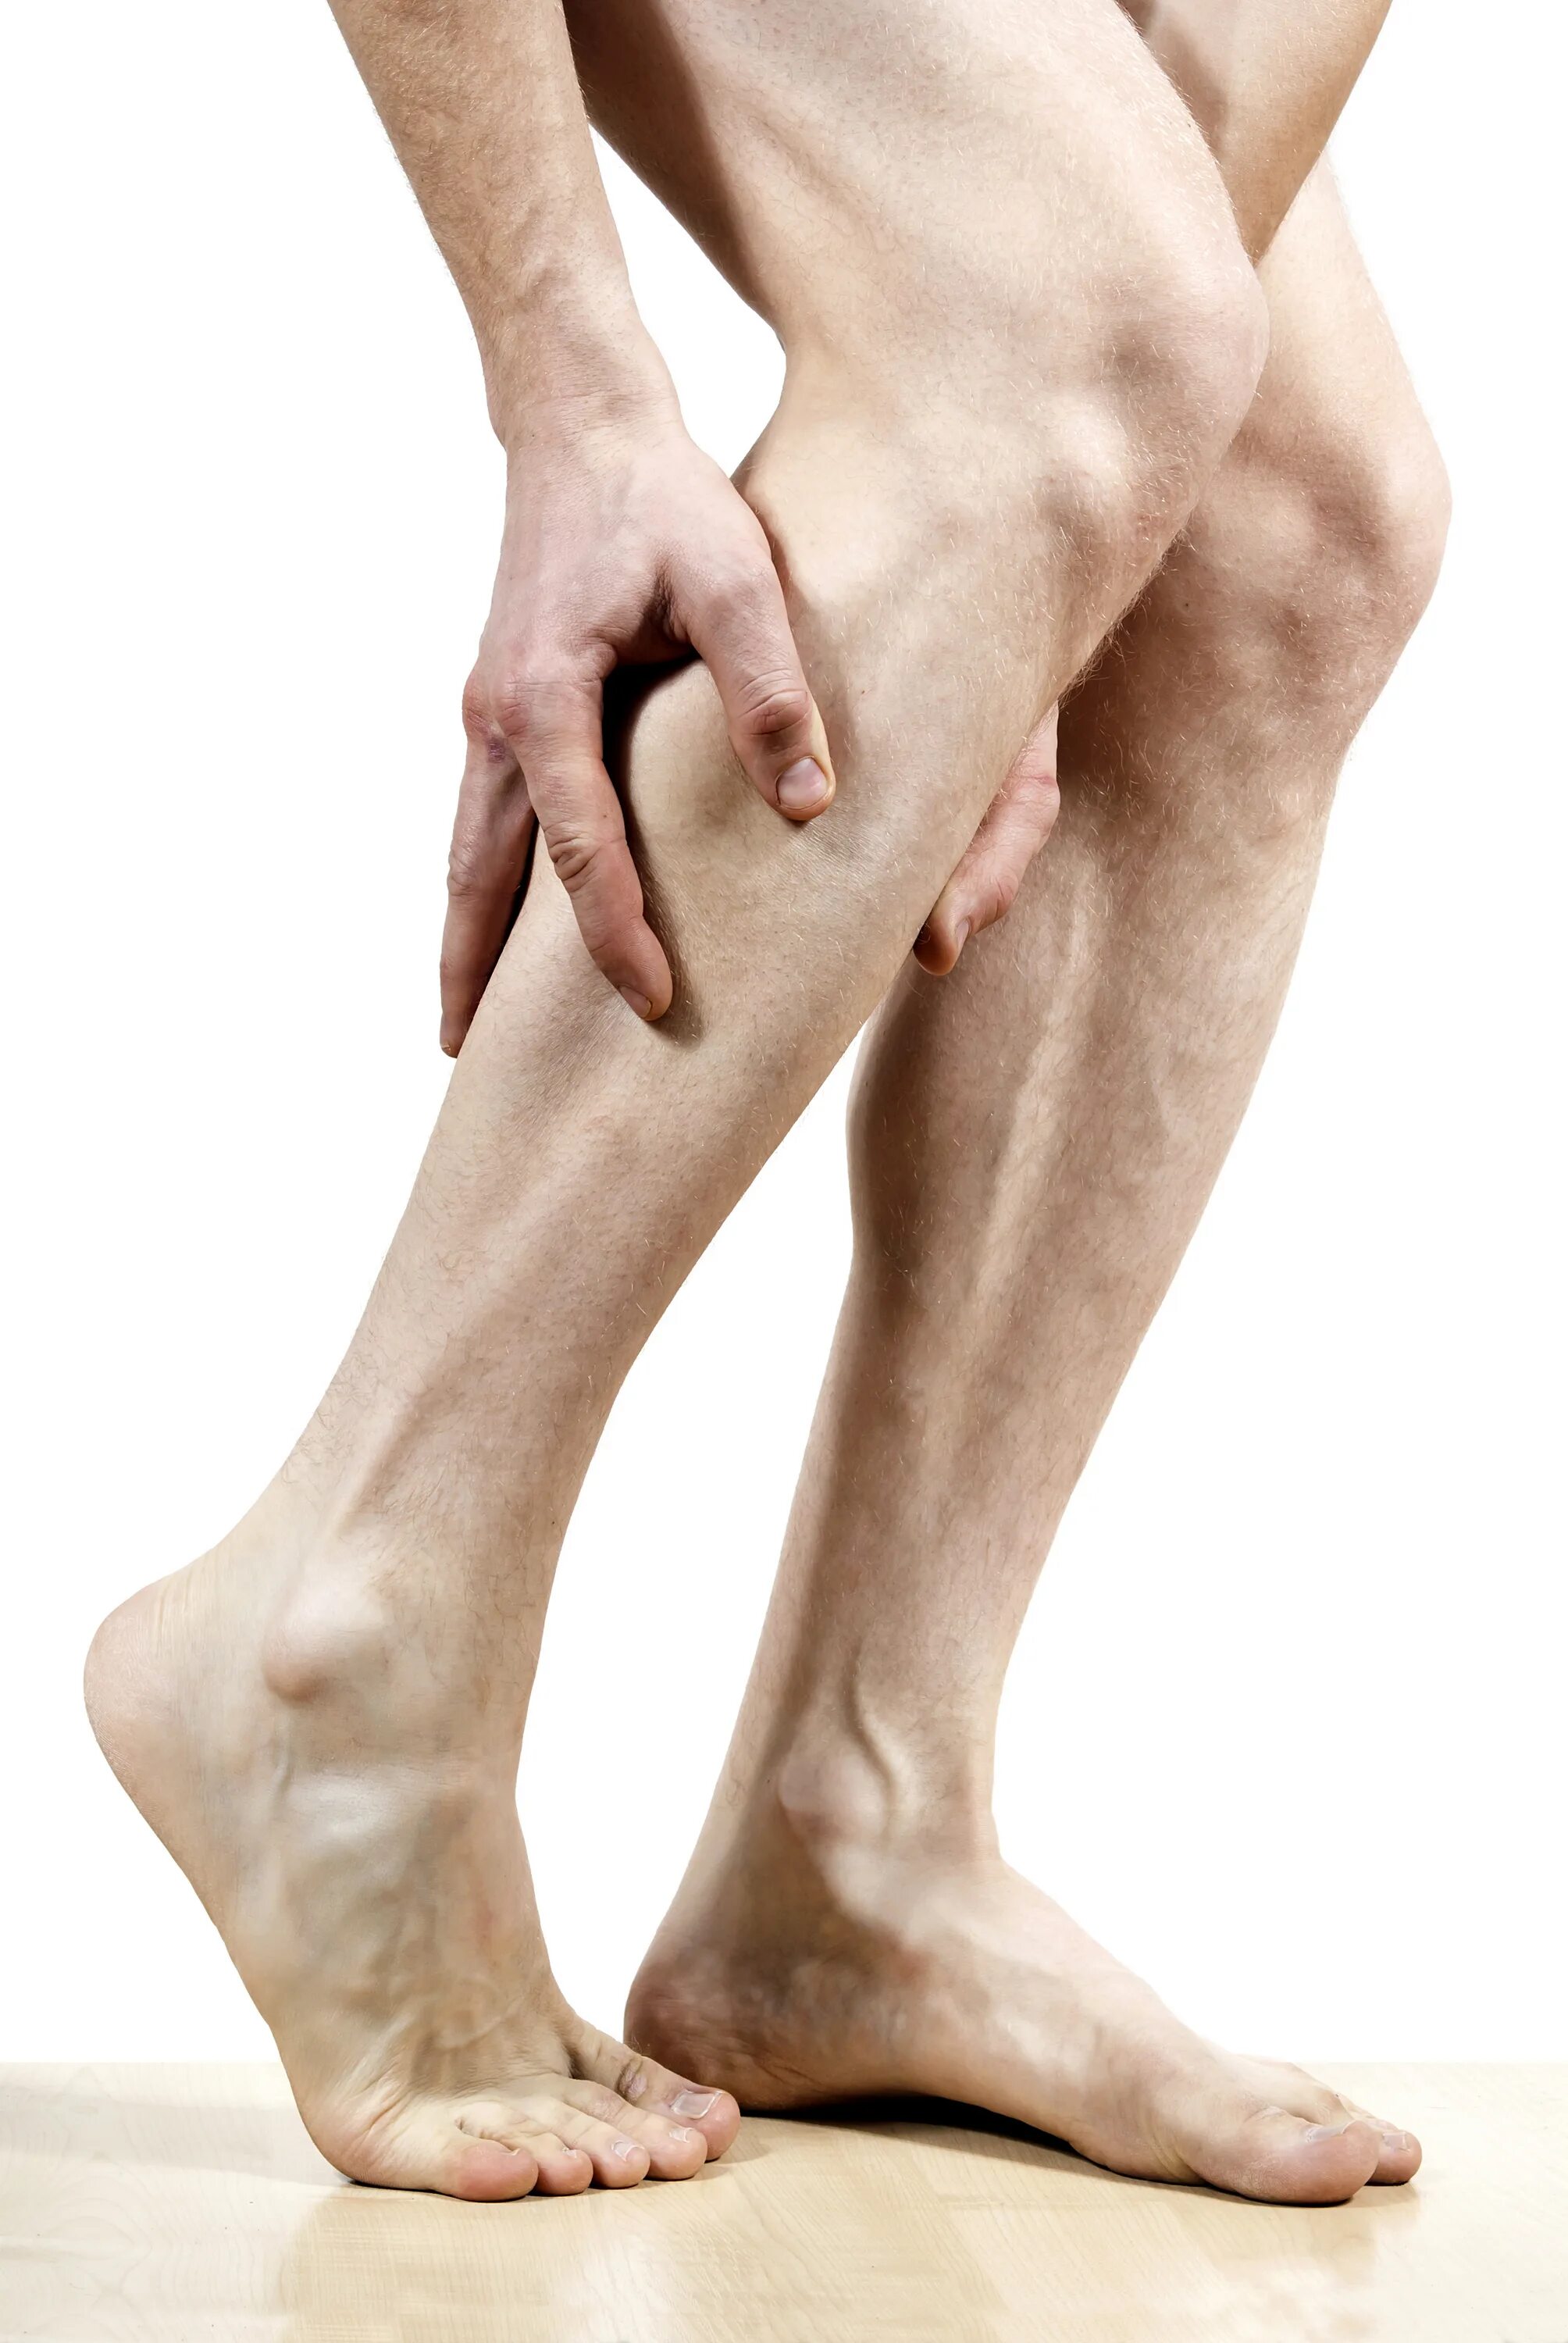 Сильные судороги в ногах по ночам. Облитерирующий атеросклероз гангрена. Рожистое воспаление голени. Атеросклероз сосудов нижних конечностей симптомы. Стадии атеросклероза нижних конечностей.